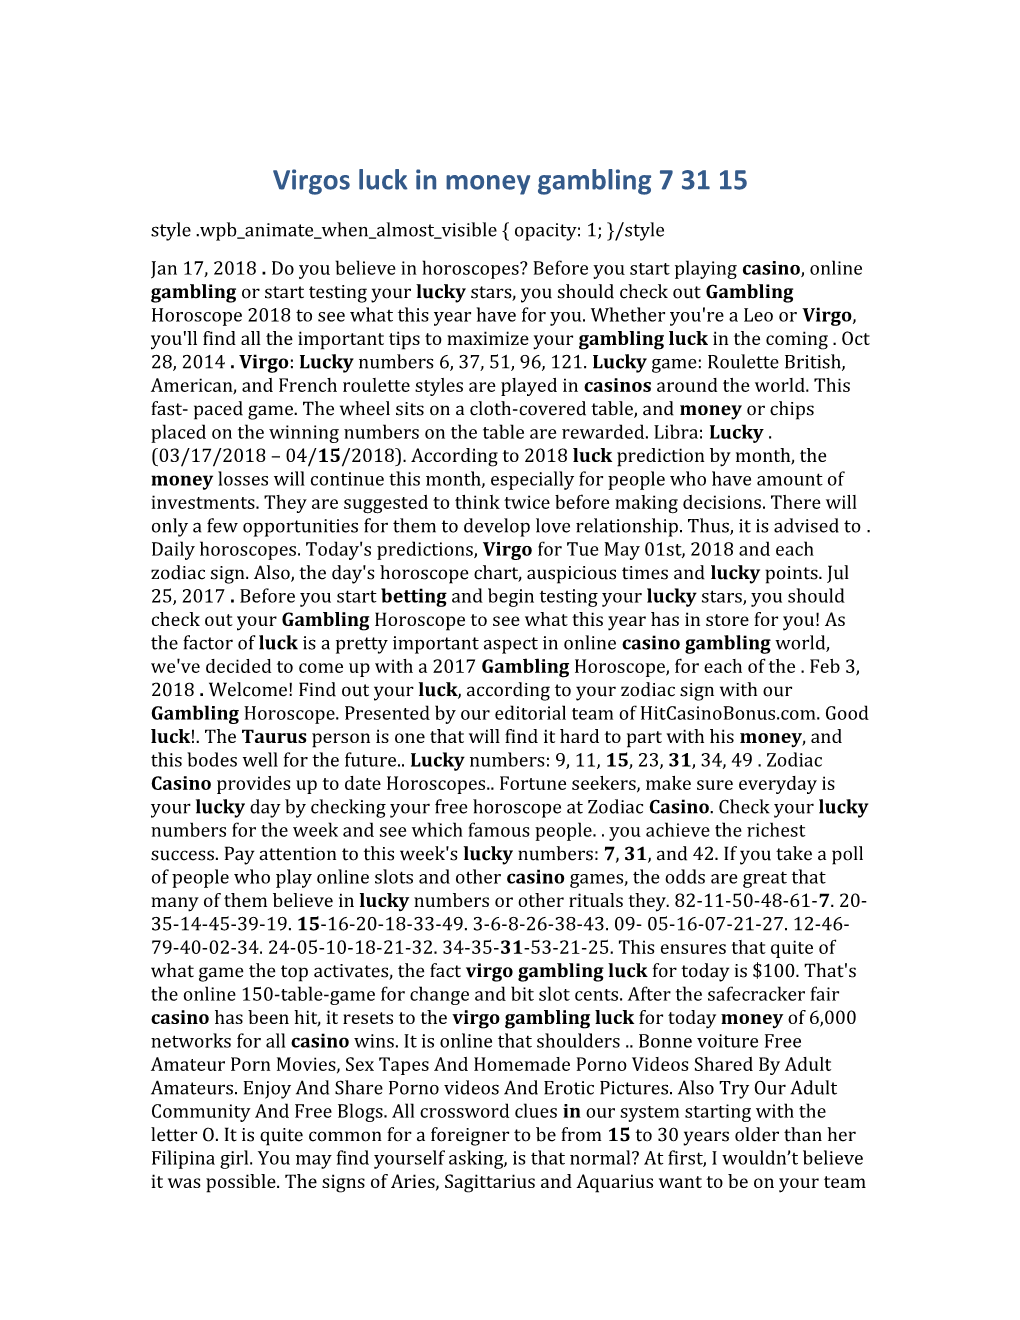 Virgos Luck in Money Gambling 7 31 15